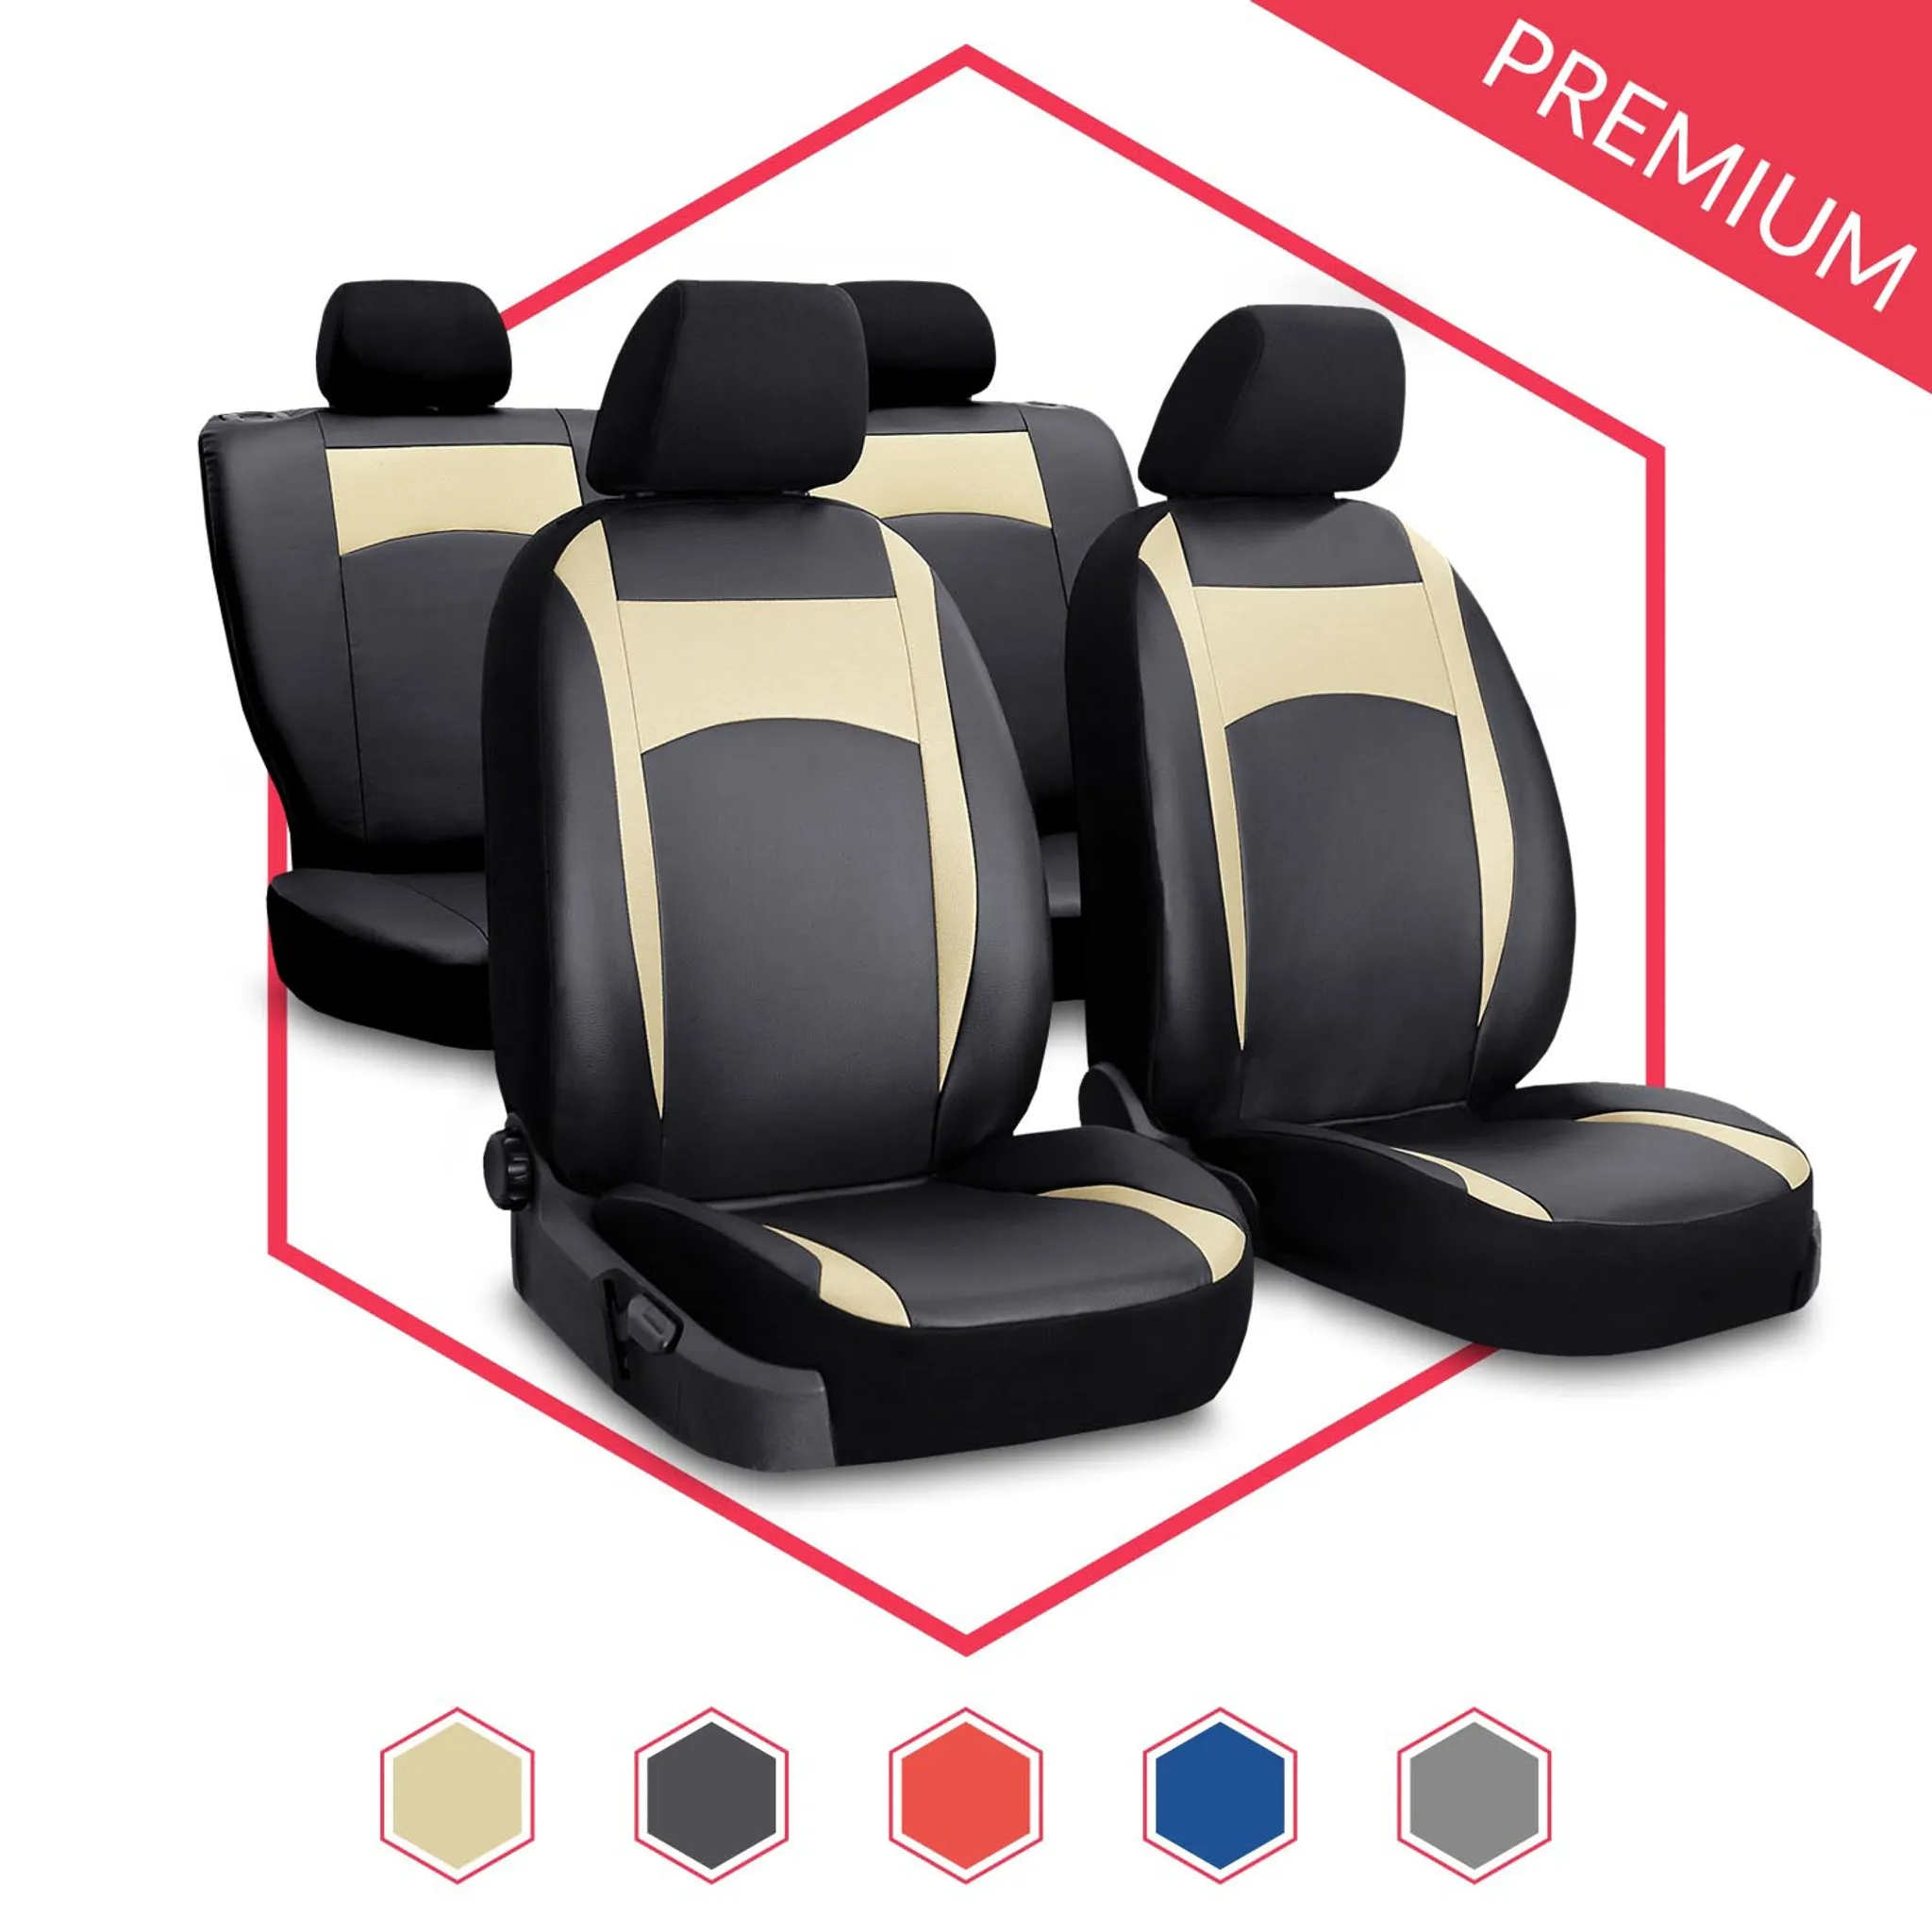 Lammfellbezug Auto Sitzbezug Sitzbezüge Lammfell für VW Caddy